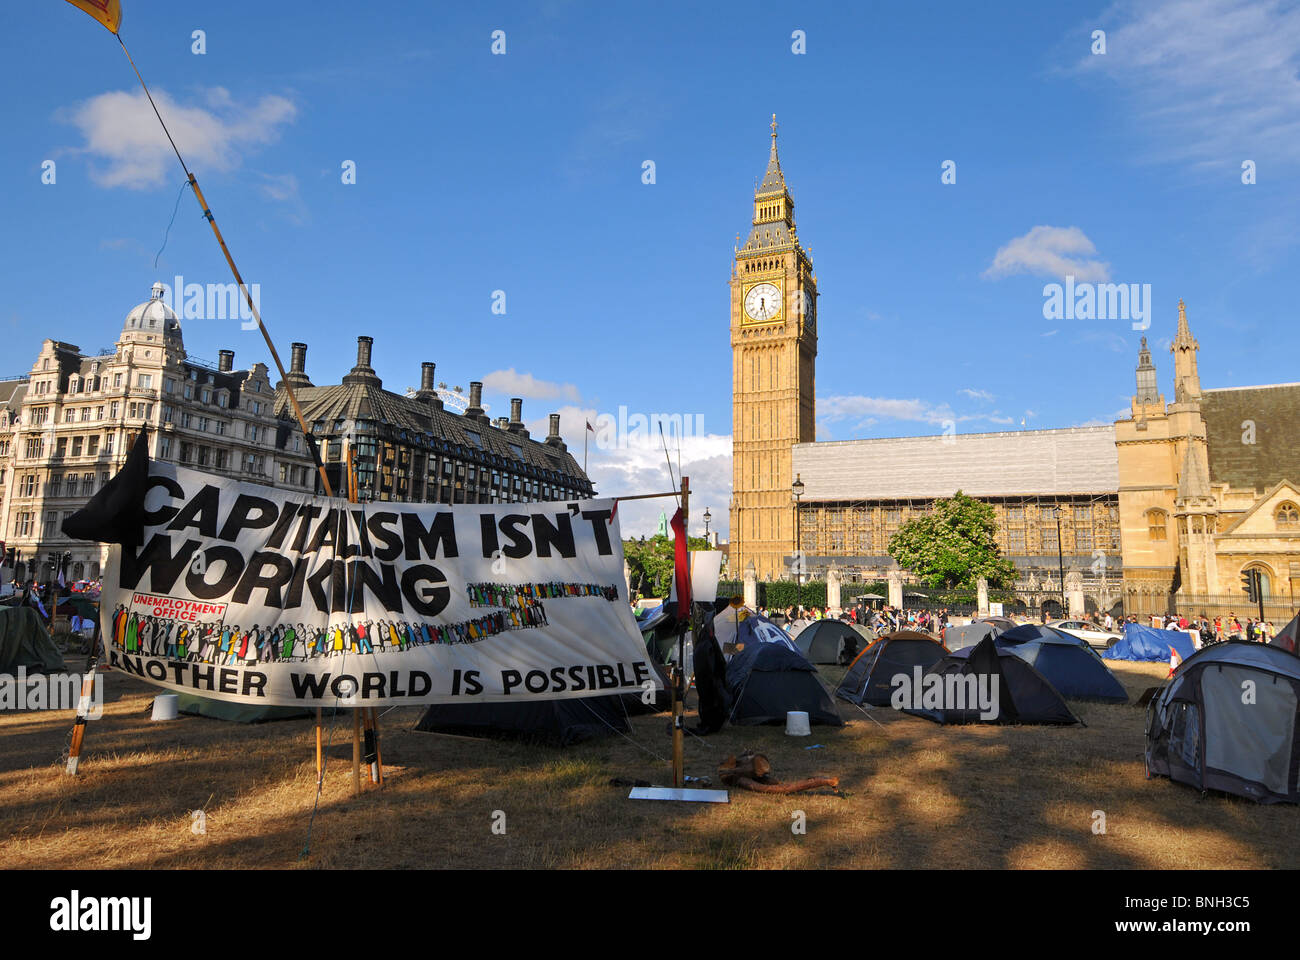 Camp de protestation au Parlement 'Carré', Westminster, Londres, Angleterre, Royaume-Uni, Juillet 2010 Banque D'Images